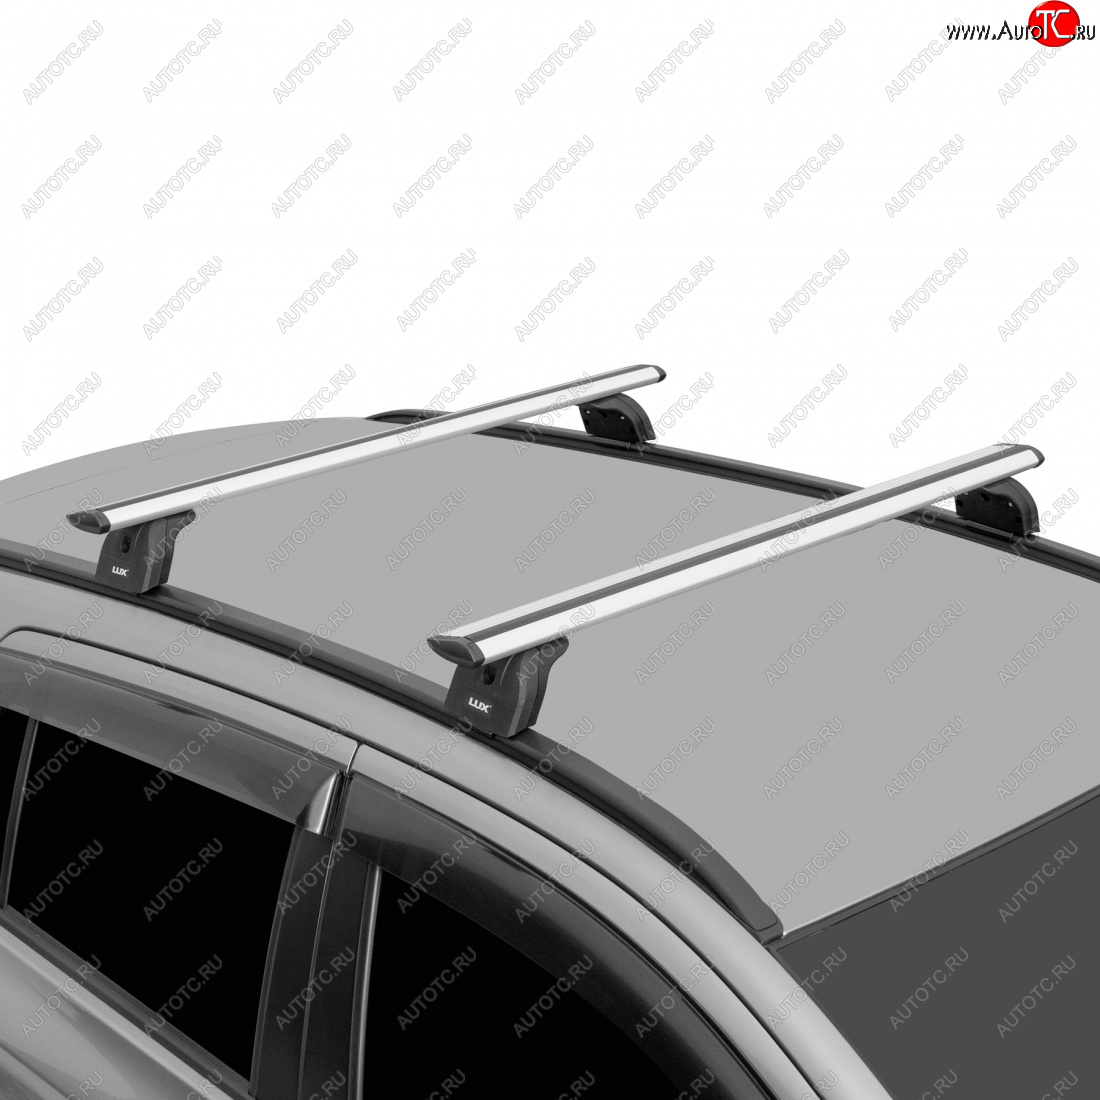 13 196 р. Багажник на крышу с низкими рейлингами сборе LUX  Volvo XC60 (2008-2017) (дуги аэро-трэвэл 120 см, с замком, серебро)  с доставкой в г. Калуга